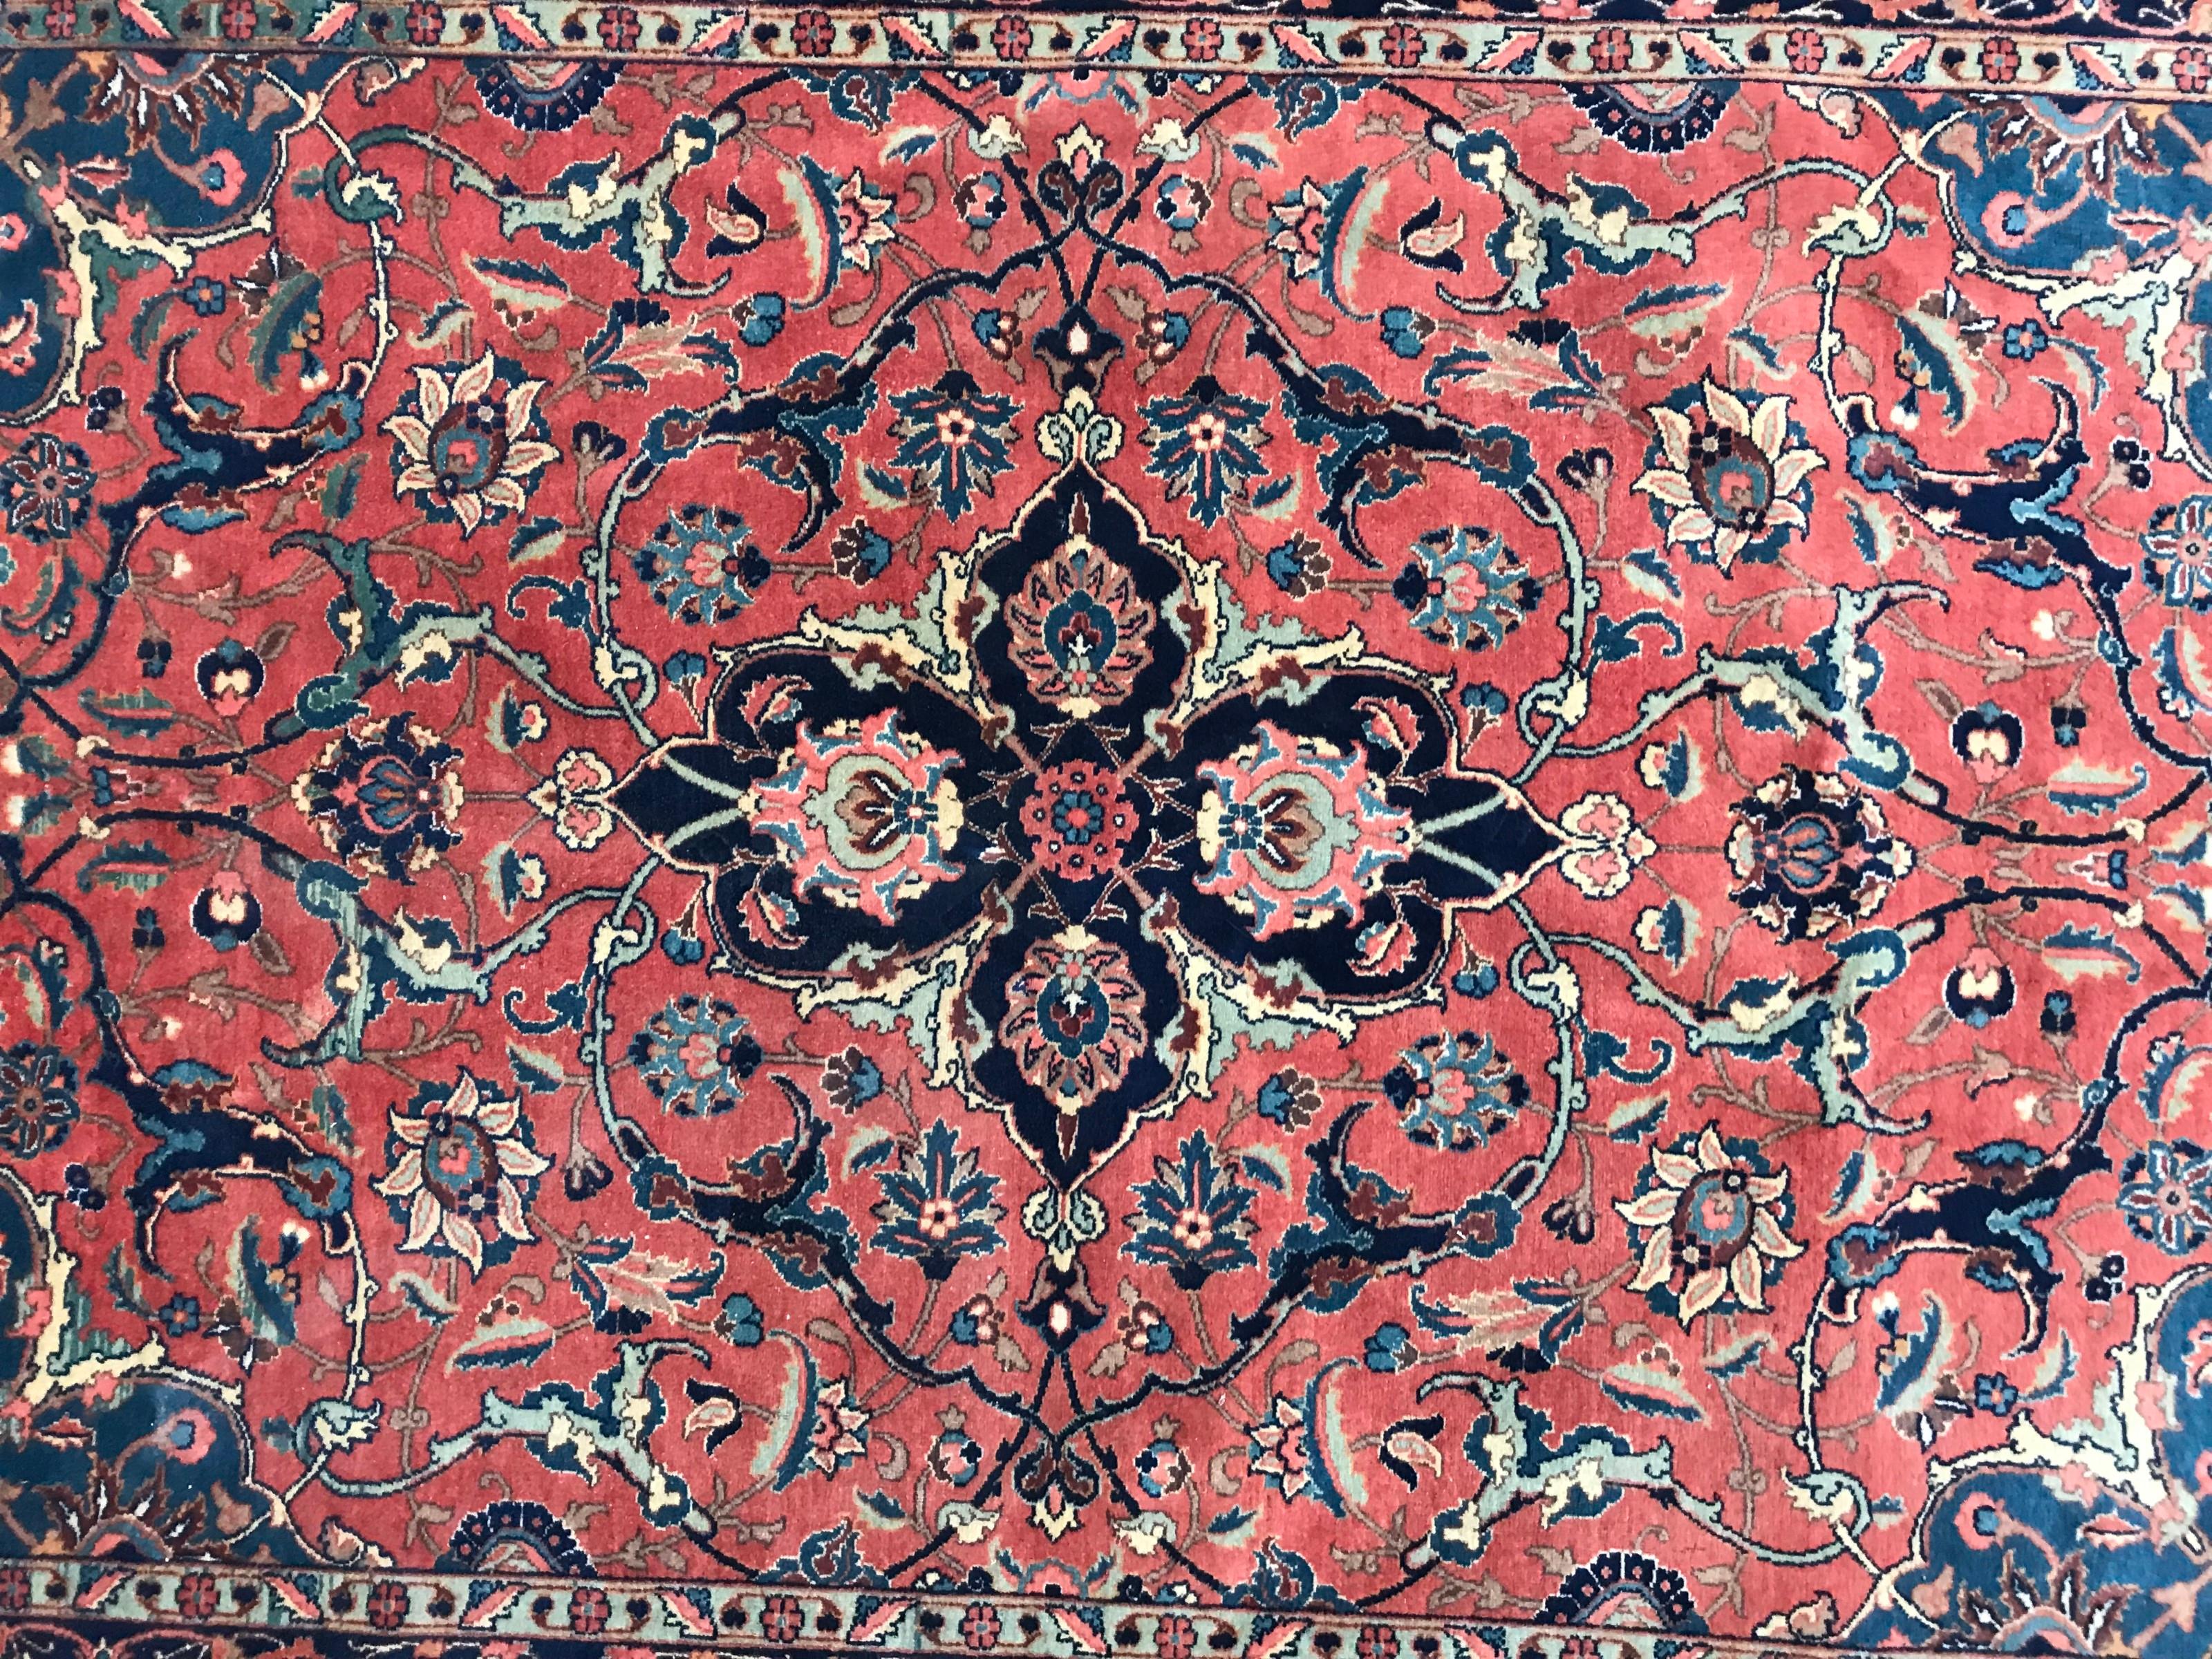 Exquis tapis ancien présentant un superbe médaillon central floral et des couleurs naturelles captivantes, notamment des nuances de rouge, de bleu et de rose. Méticuleusement noué à la main avec du velours de laine sur une base de coton durable. Une